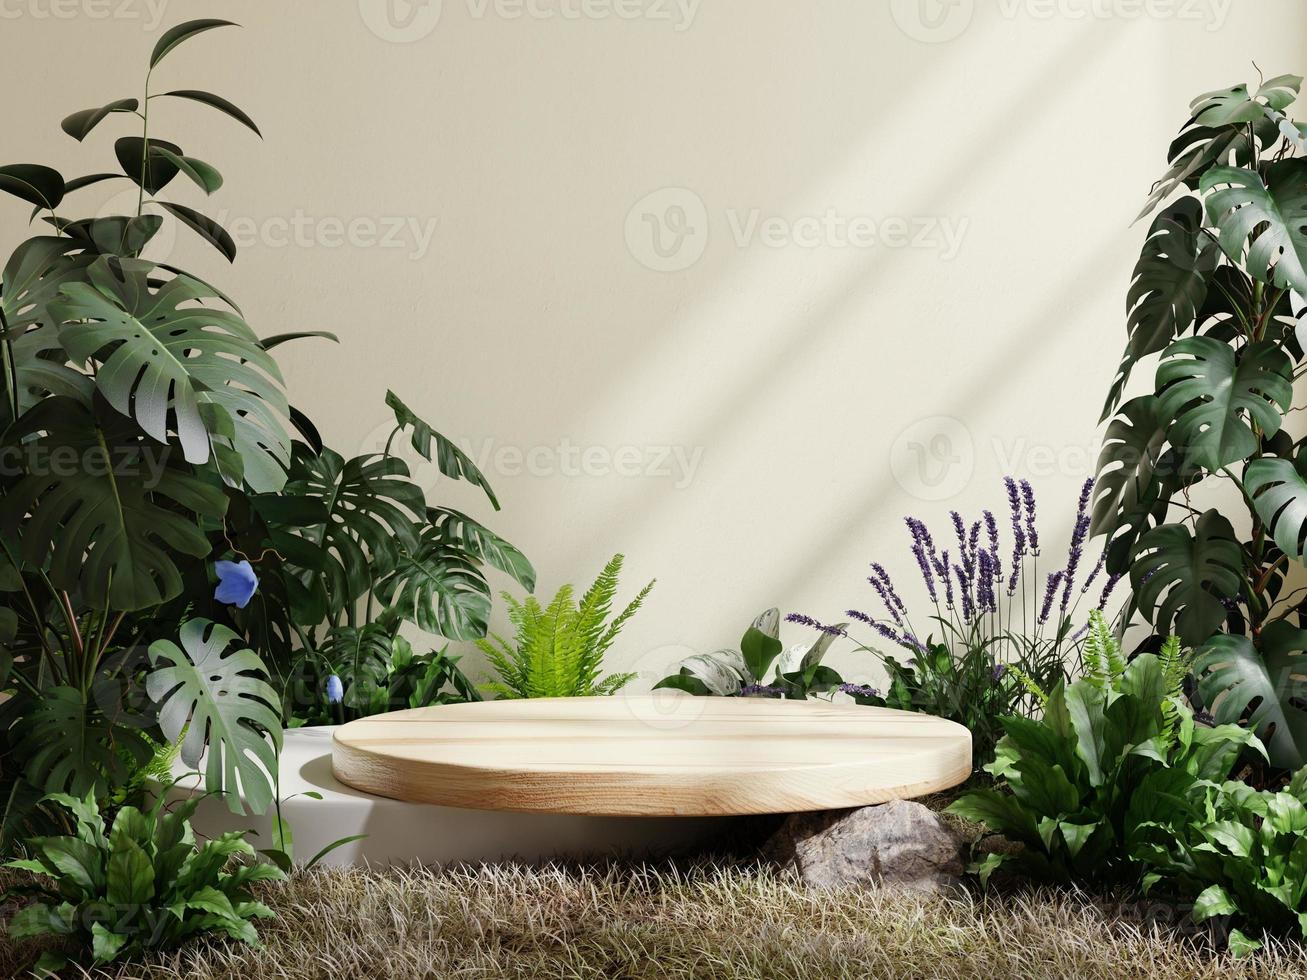 plinto de madeira círculo na floresta tropical para apresentação do produto e fundo de cor creme. foto